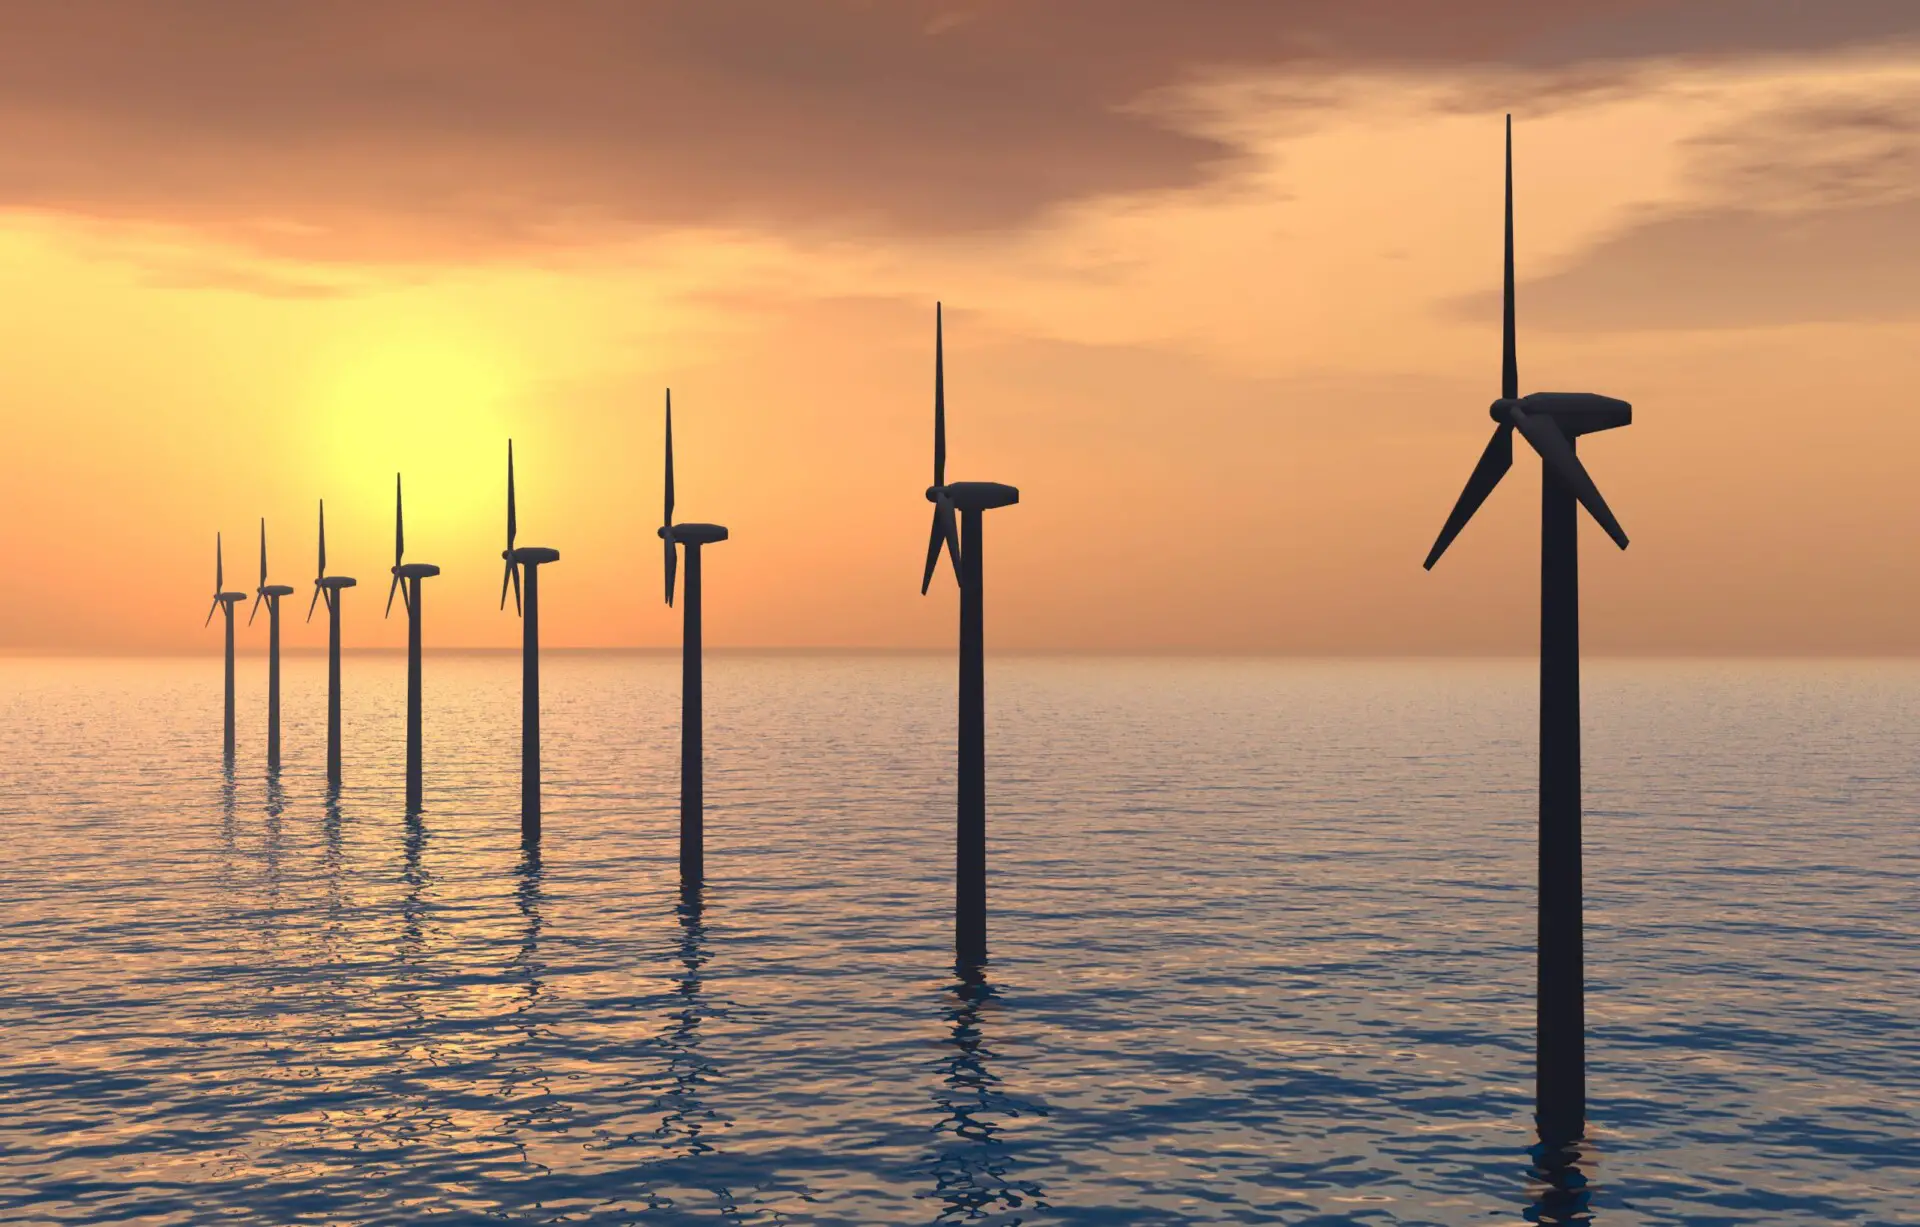 Sind Offshore-Windparks umweltschädlich? (3 wichtige Fakten)